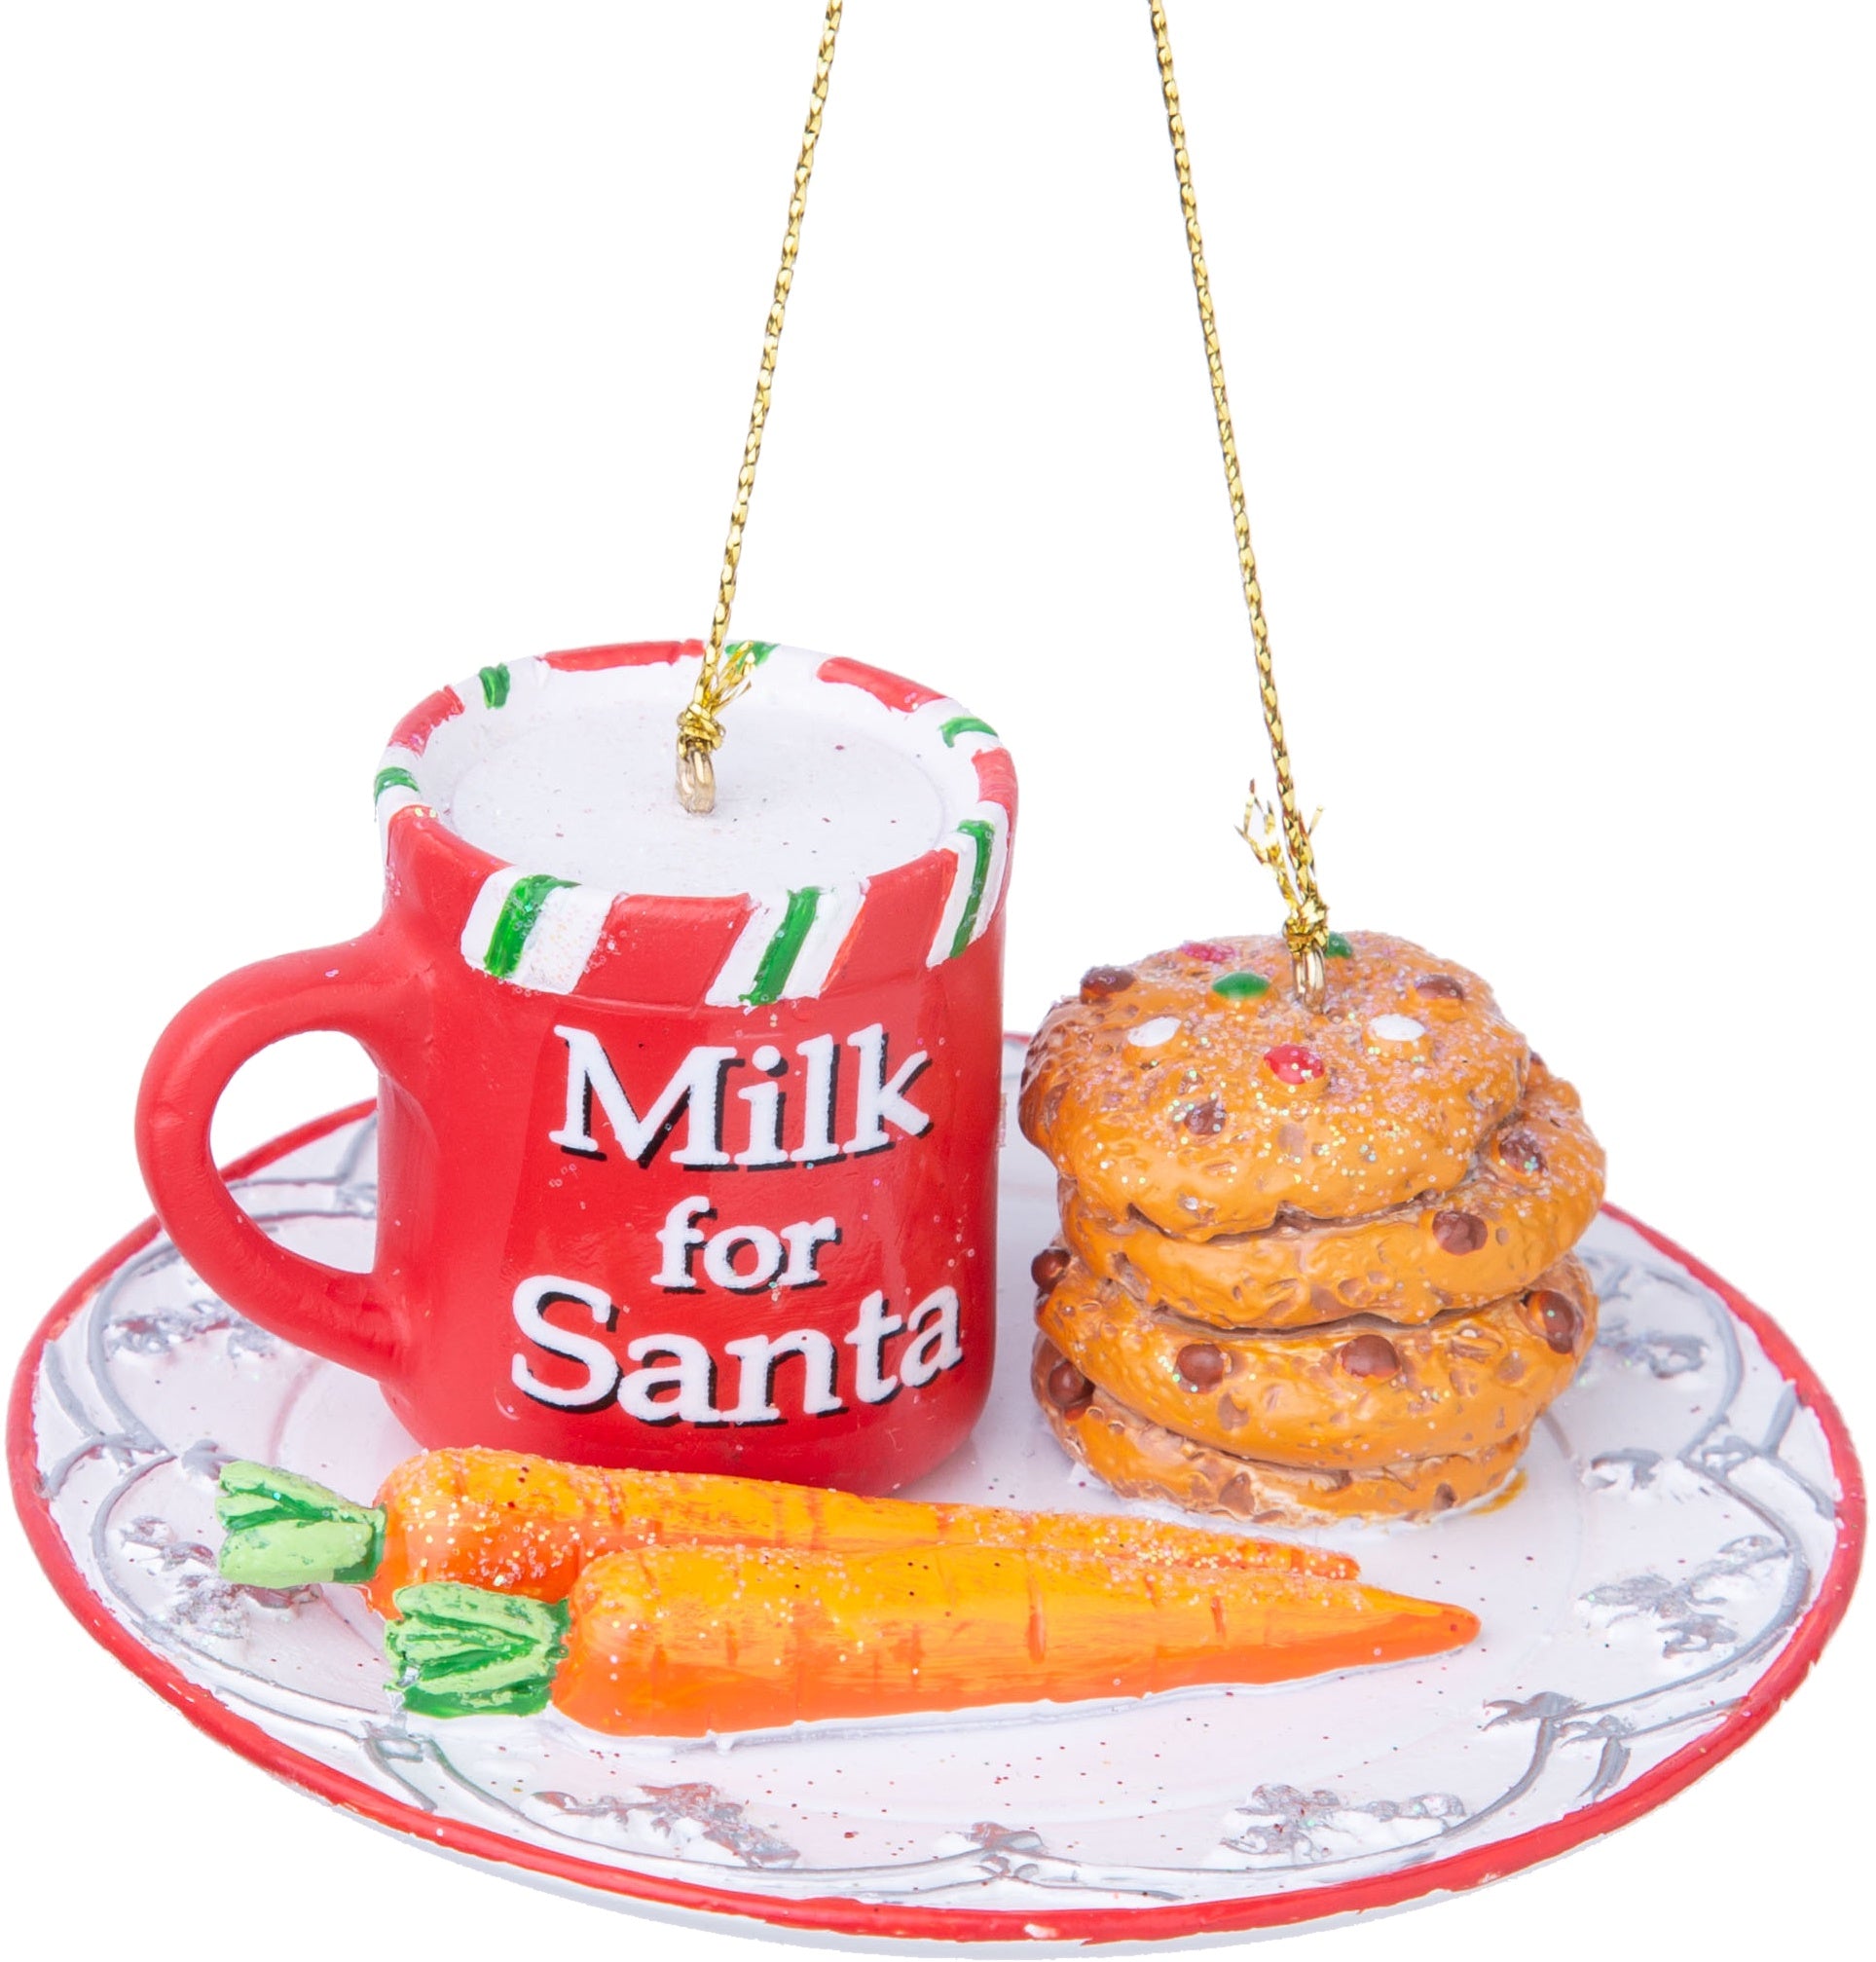 Milk & Cookies for Santa Ornament